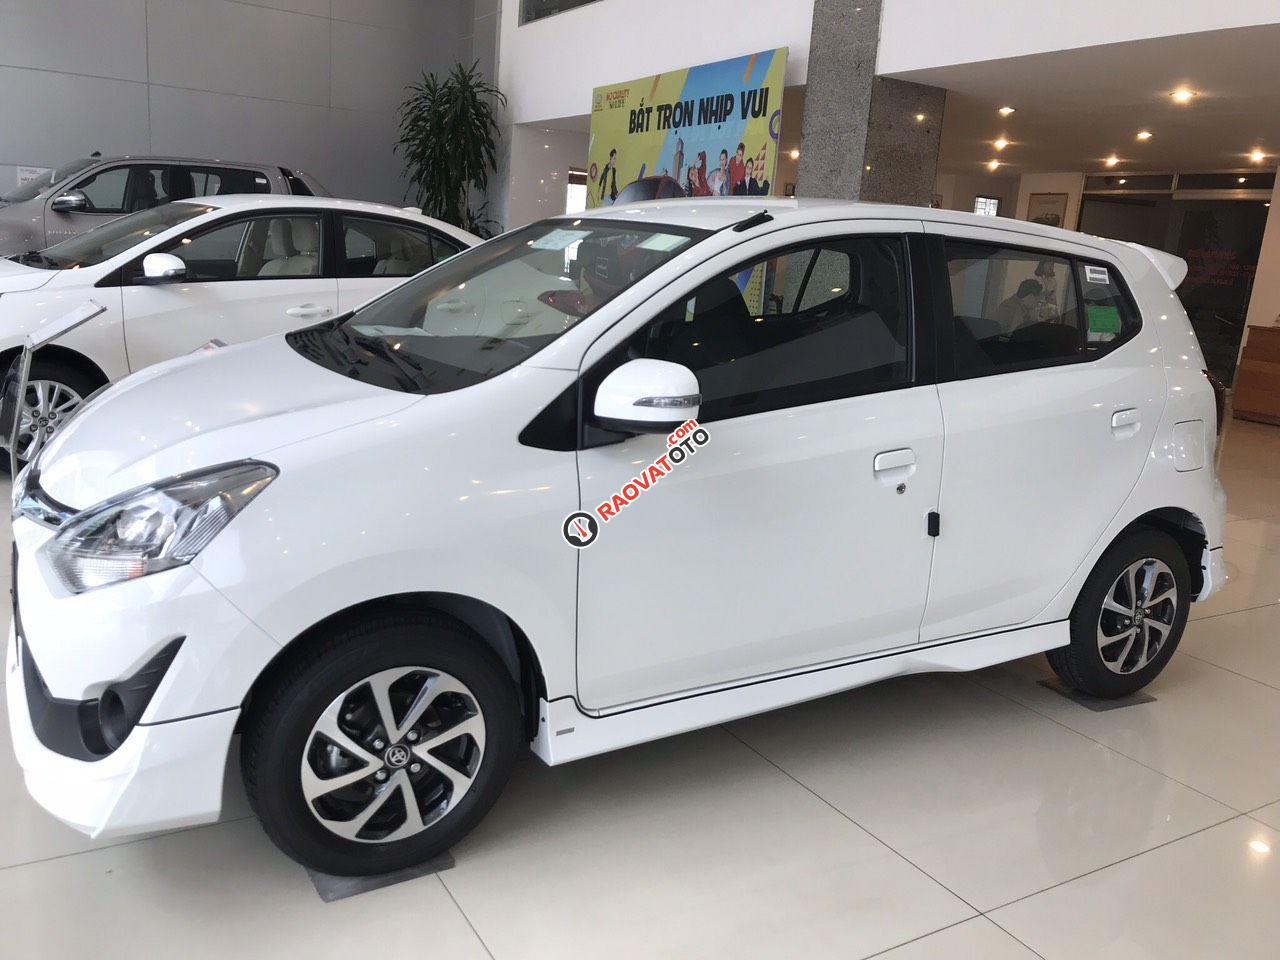 Toyota Vinh-Nghệ An-Hotline: 0904.72.52.66 bán xe Wigo tự động giá rẻ nhất Nghệ An, trả góp lãi suất từ 0%-2